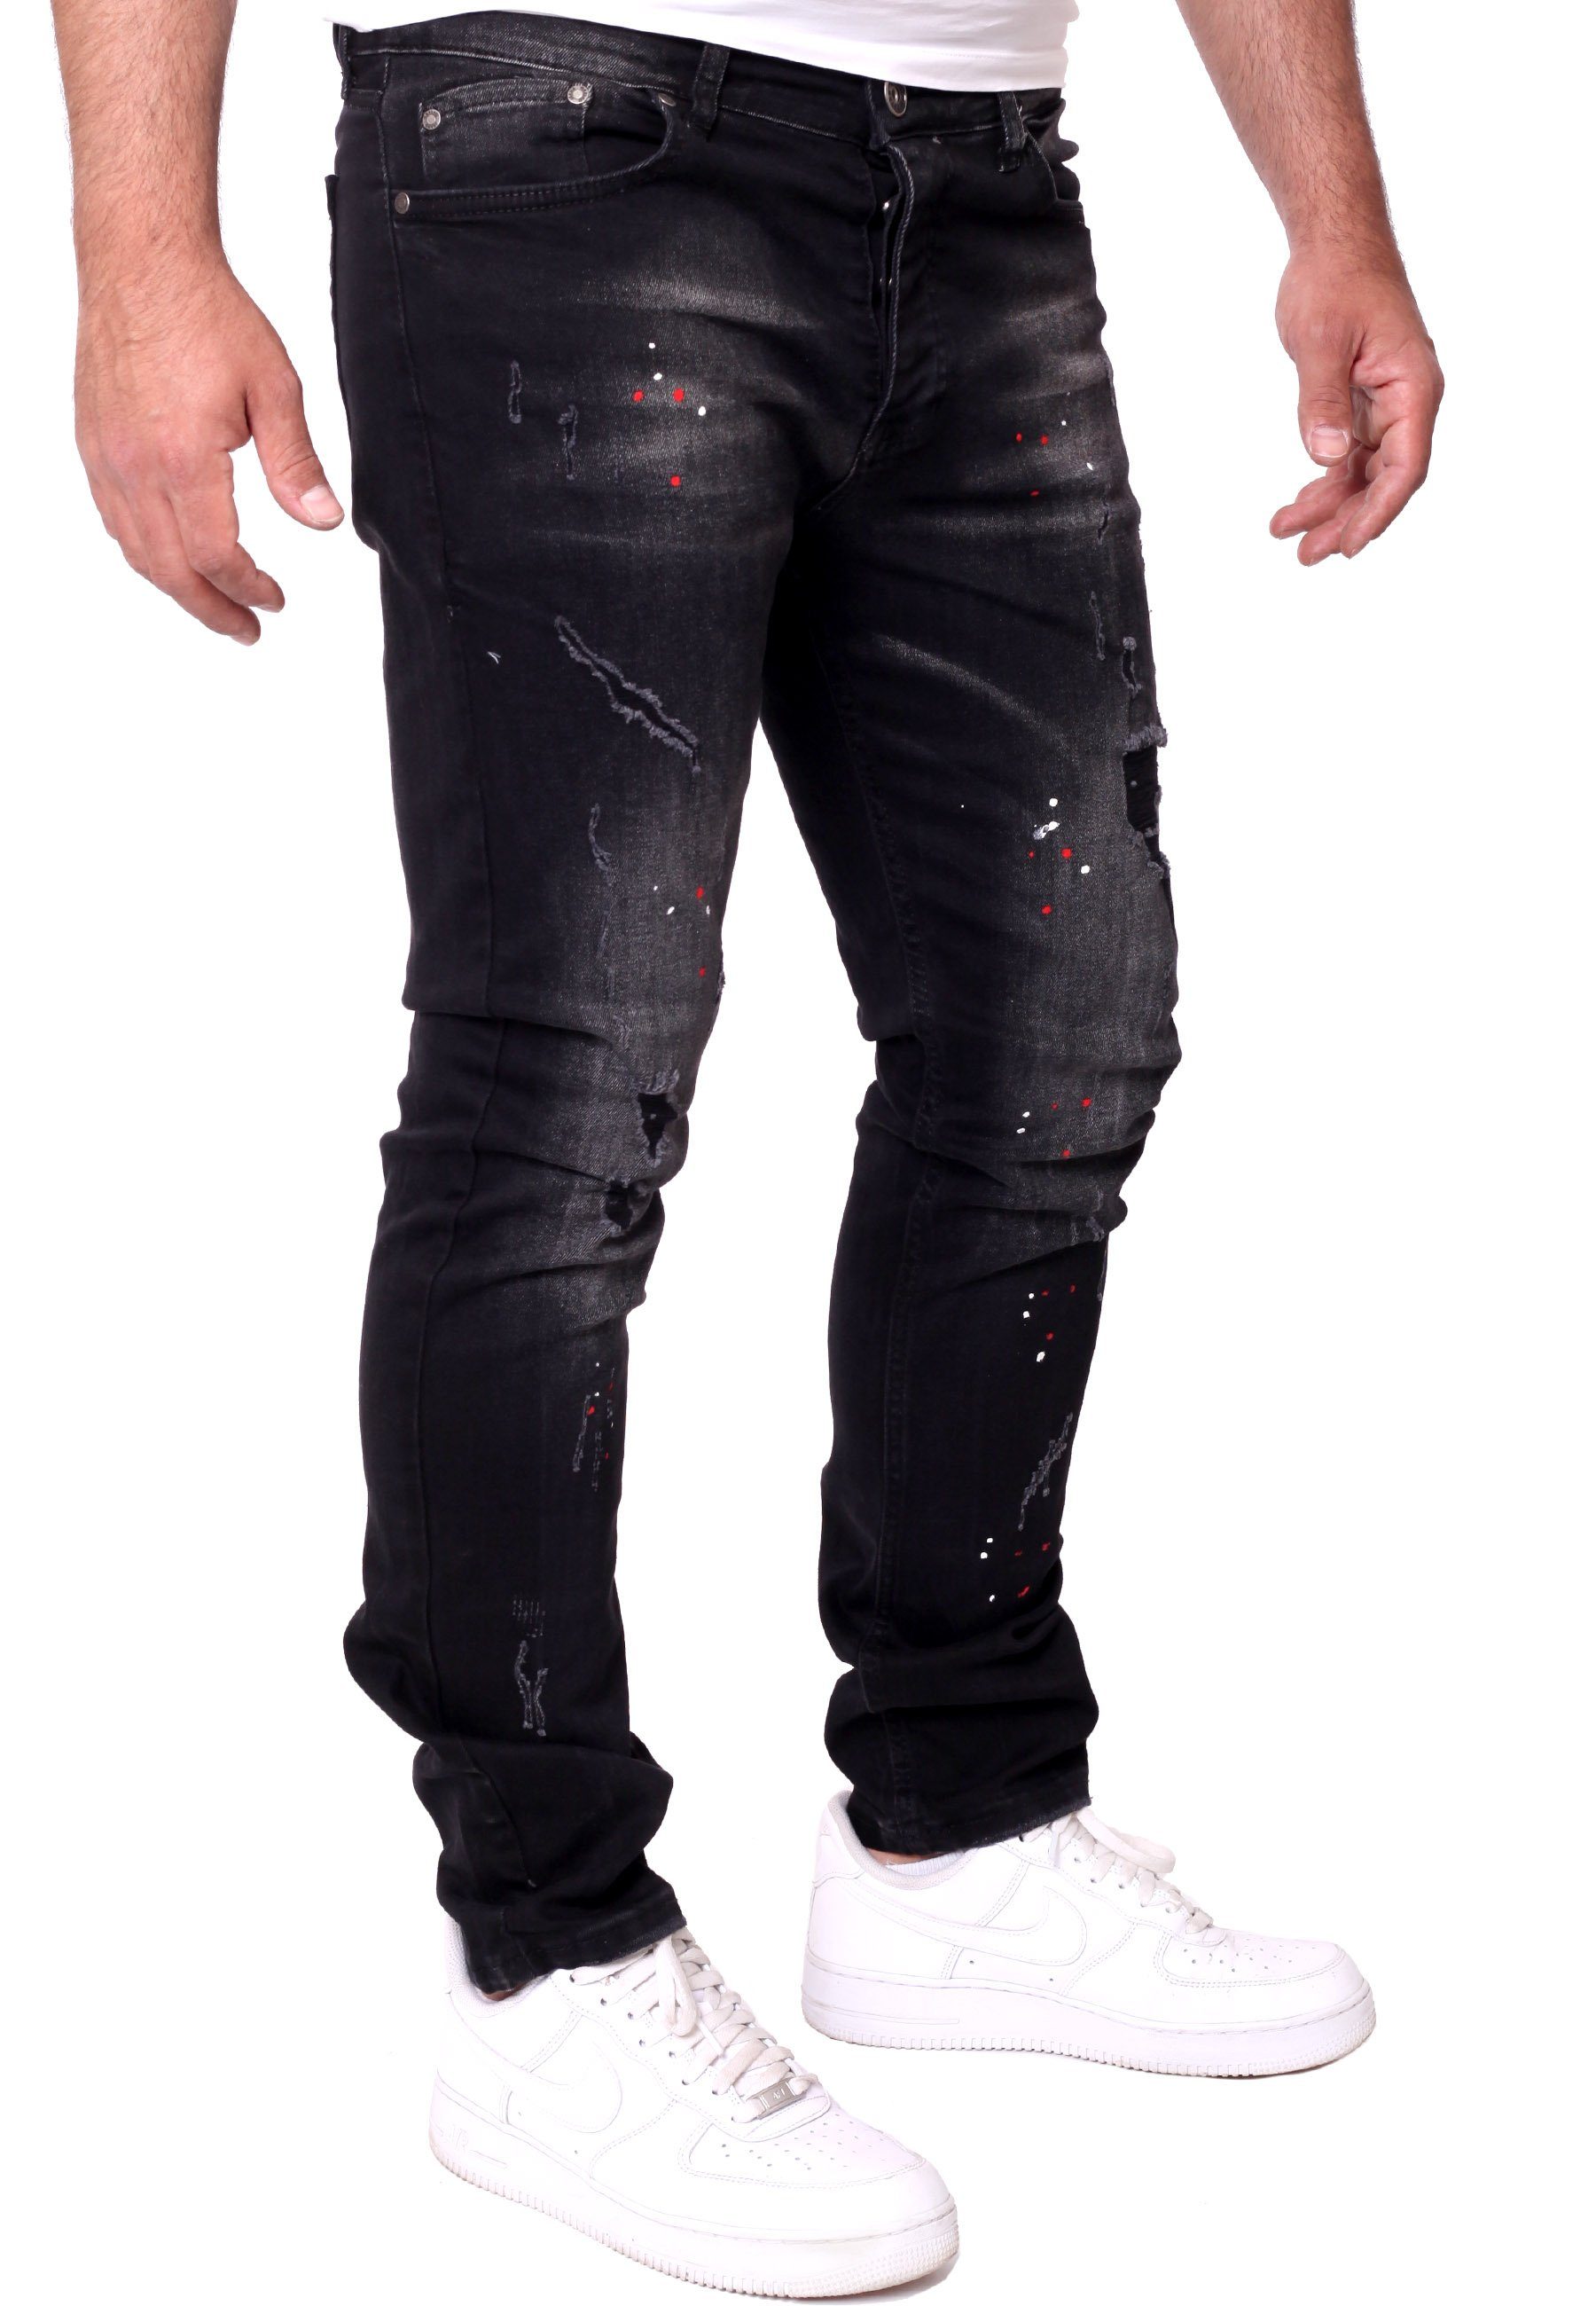 Männer-Hose Jeanshose Denim schwarz Stretch Destroyed Destroyed Reslad Destroyed-Jeans Slim Jeans Jeanshose Reslad Color-Splashes Herren Fit